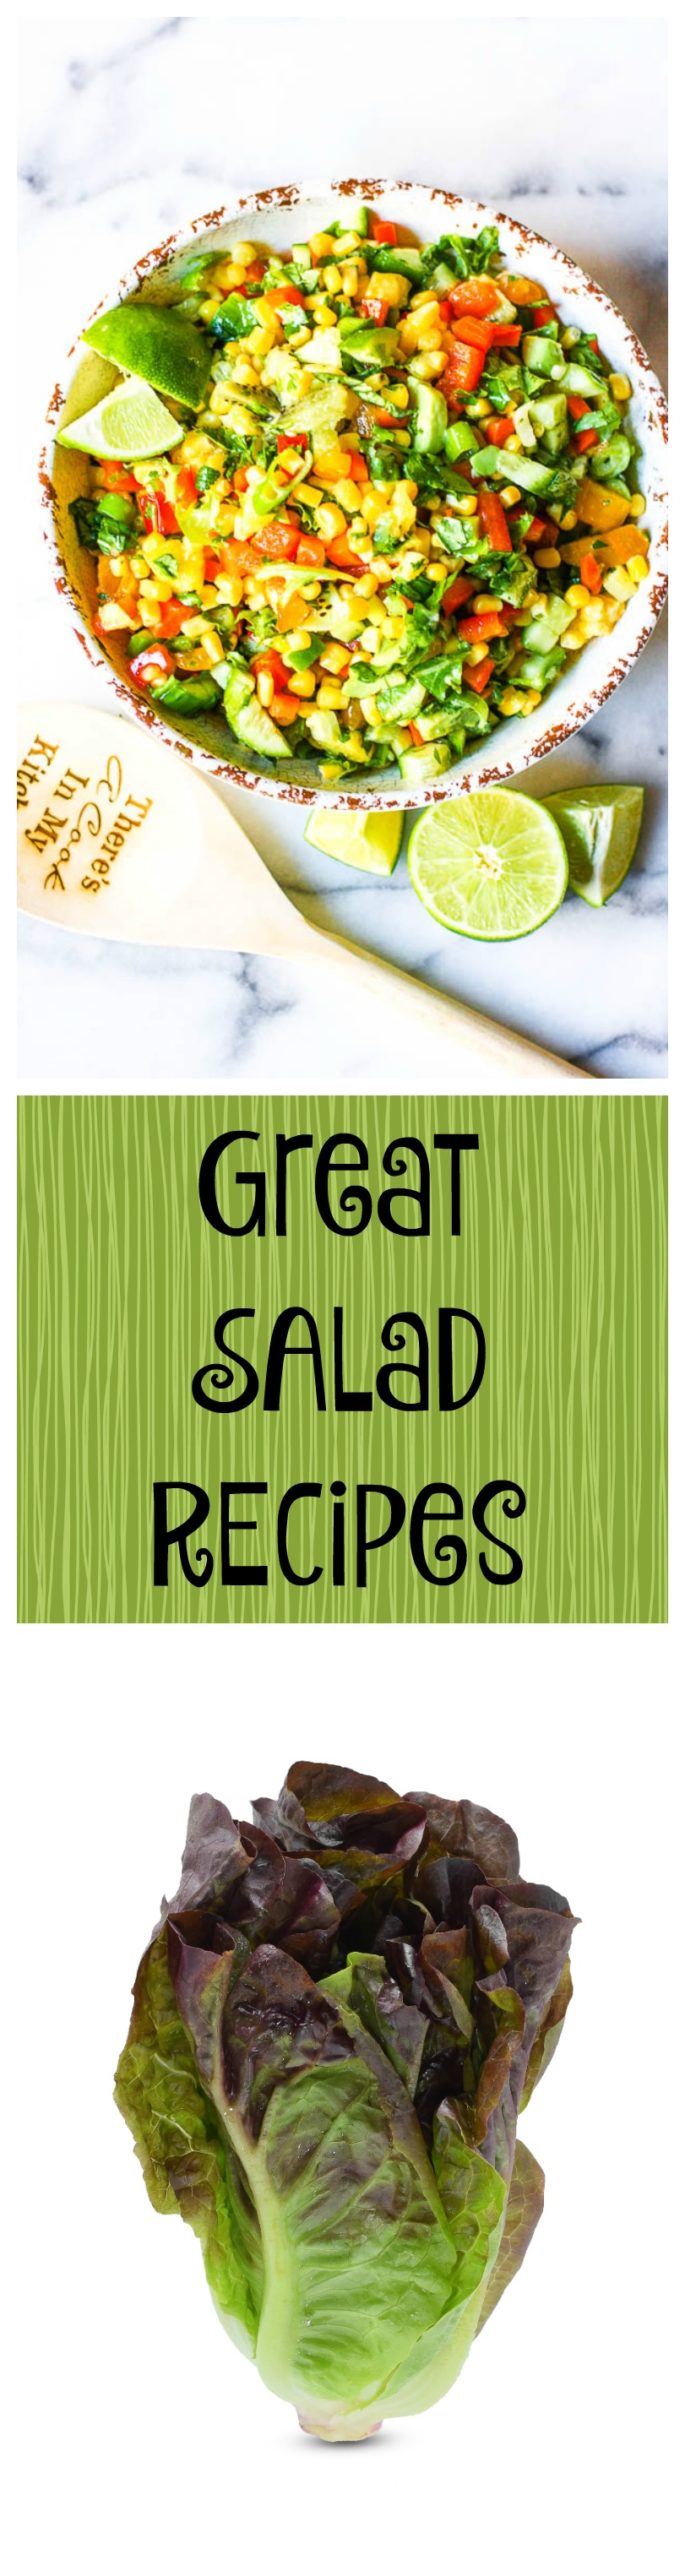 great salad recipes